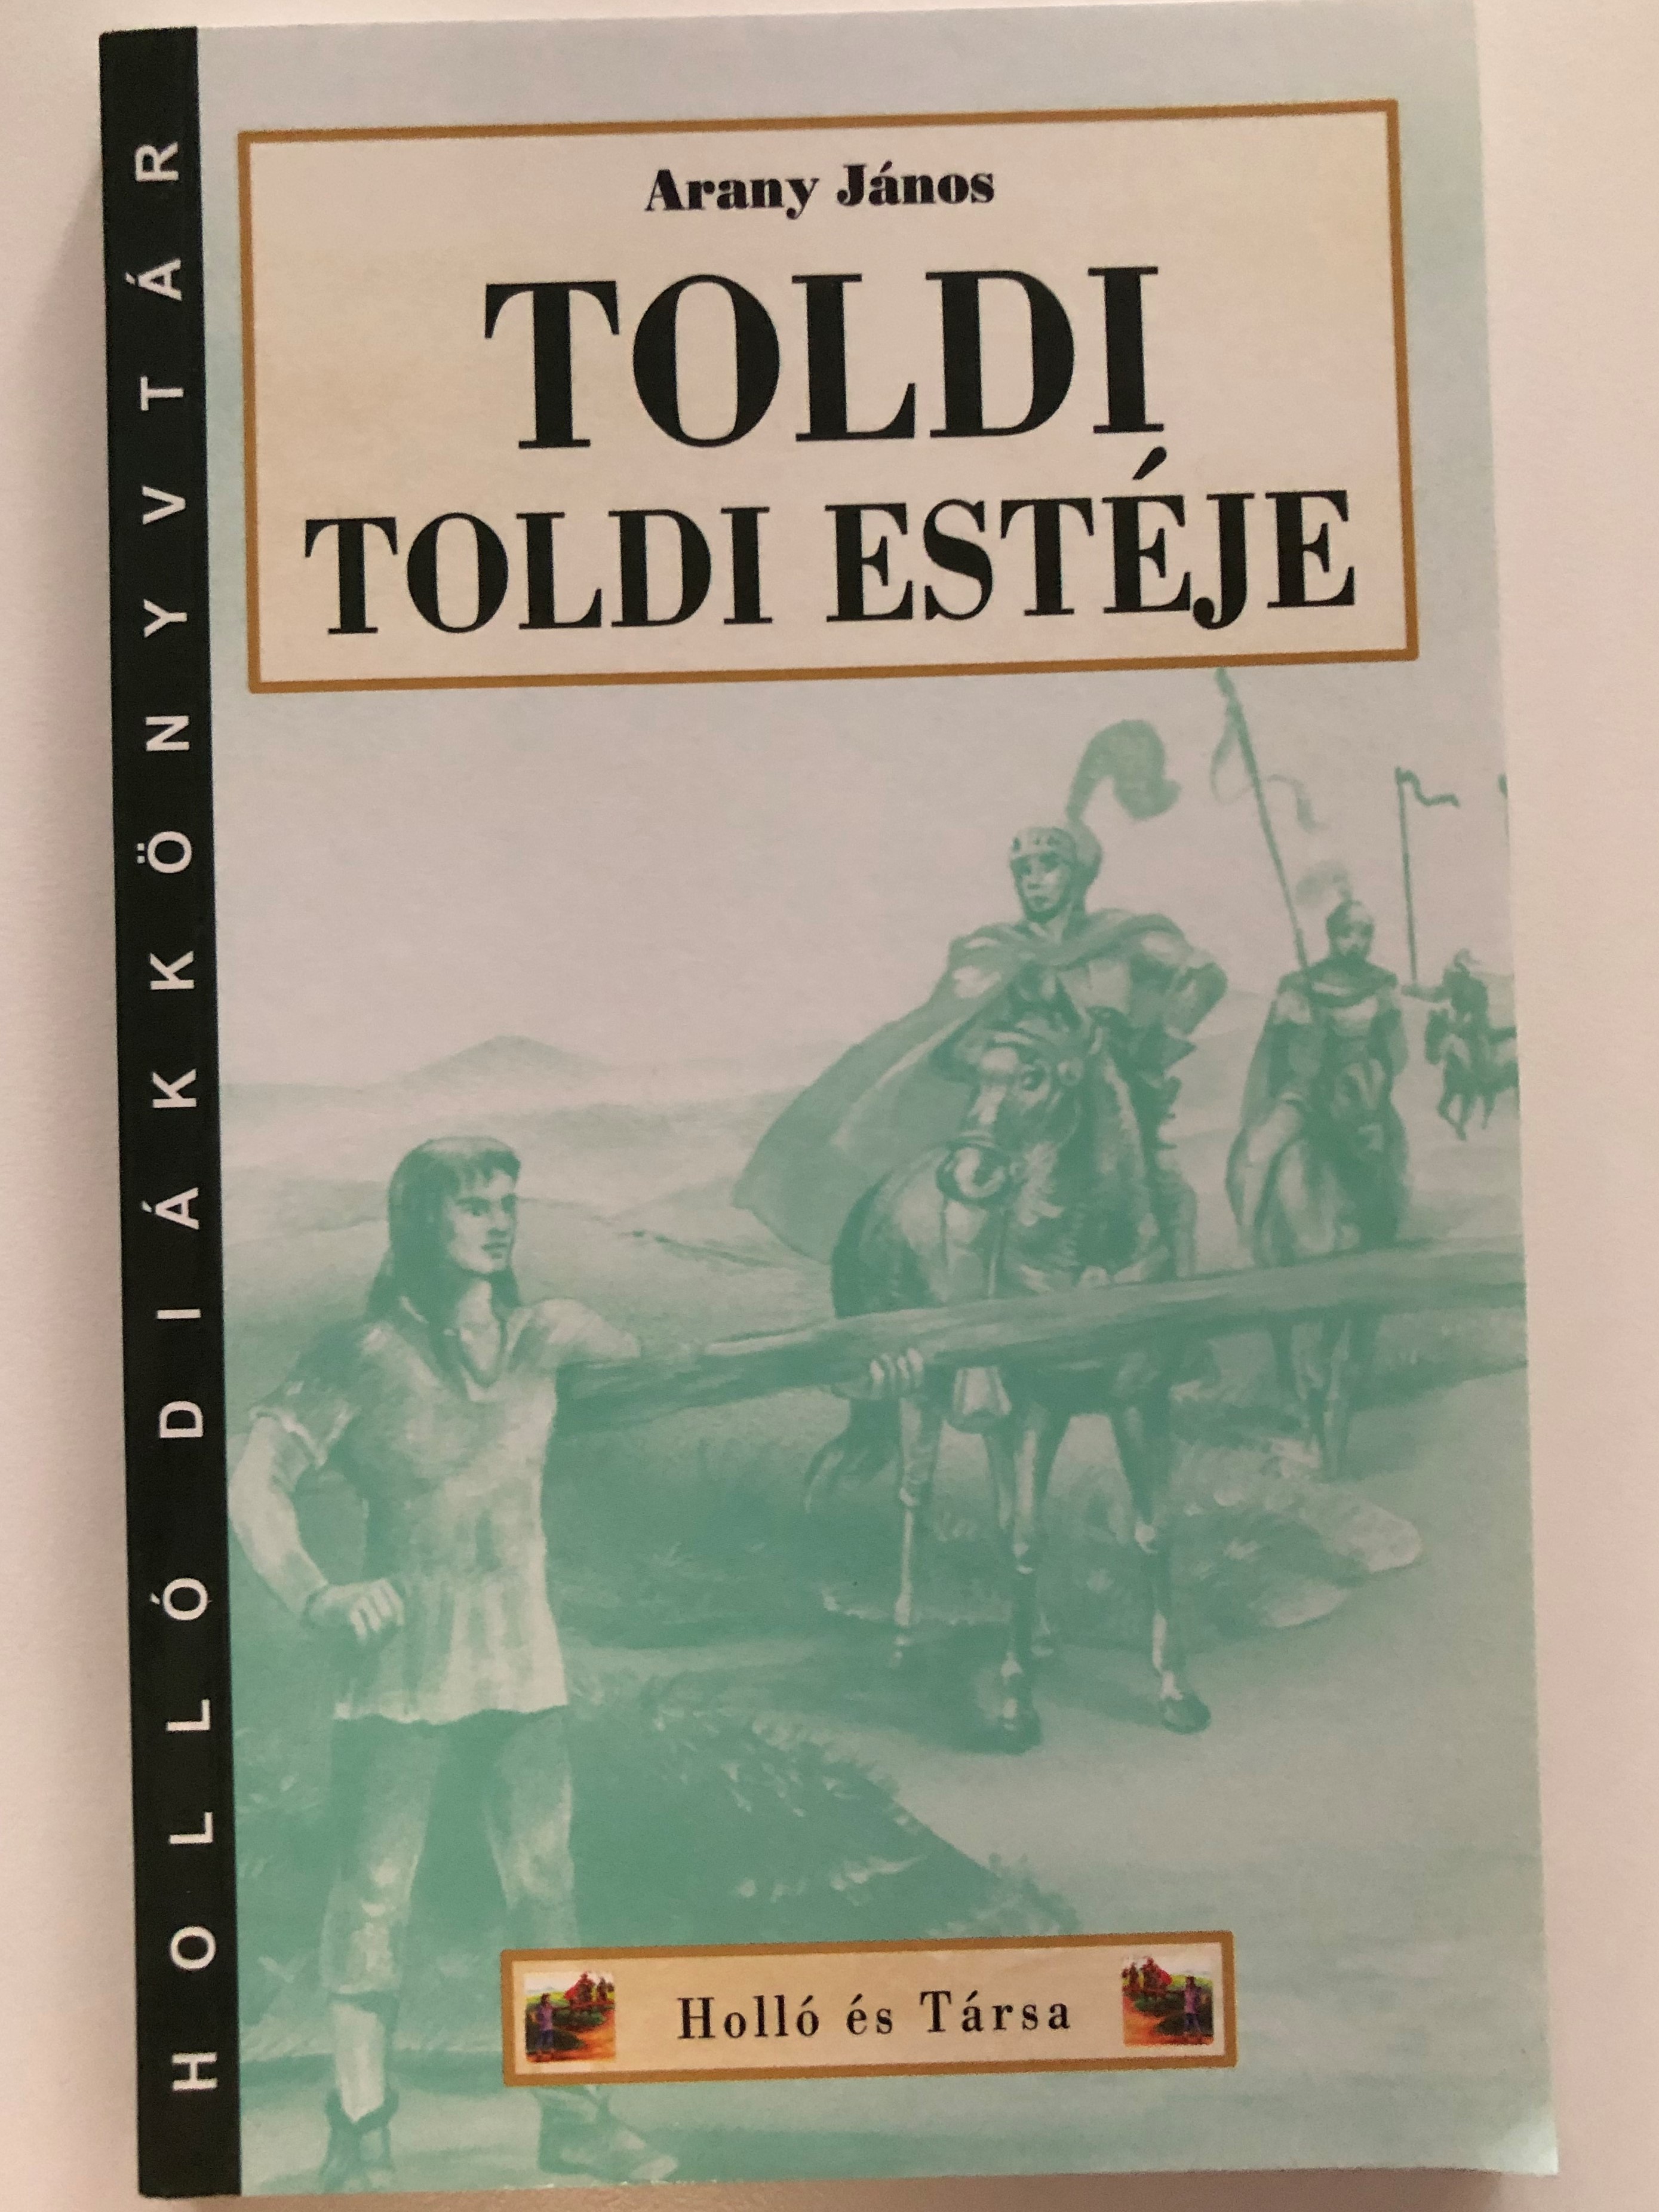 Toldi estéje by Arany János / Toldi's night - Hungarian narrative poem /  Holló és Társa kiadó - Holló diákkönyvtár / Paperback - bibleinmylanguage